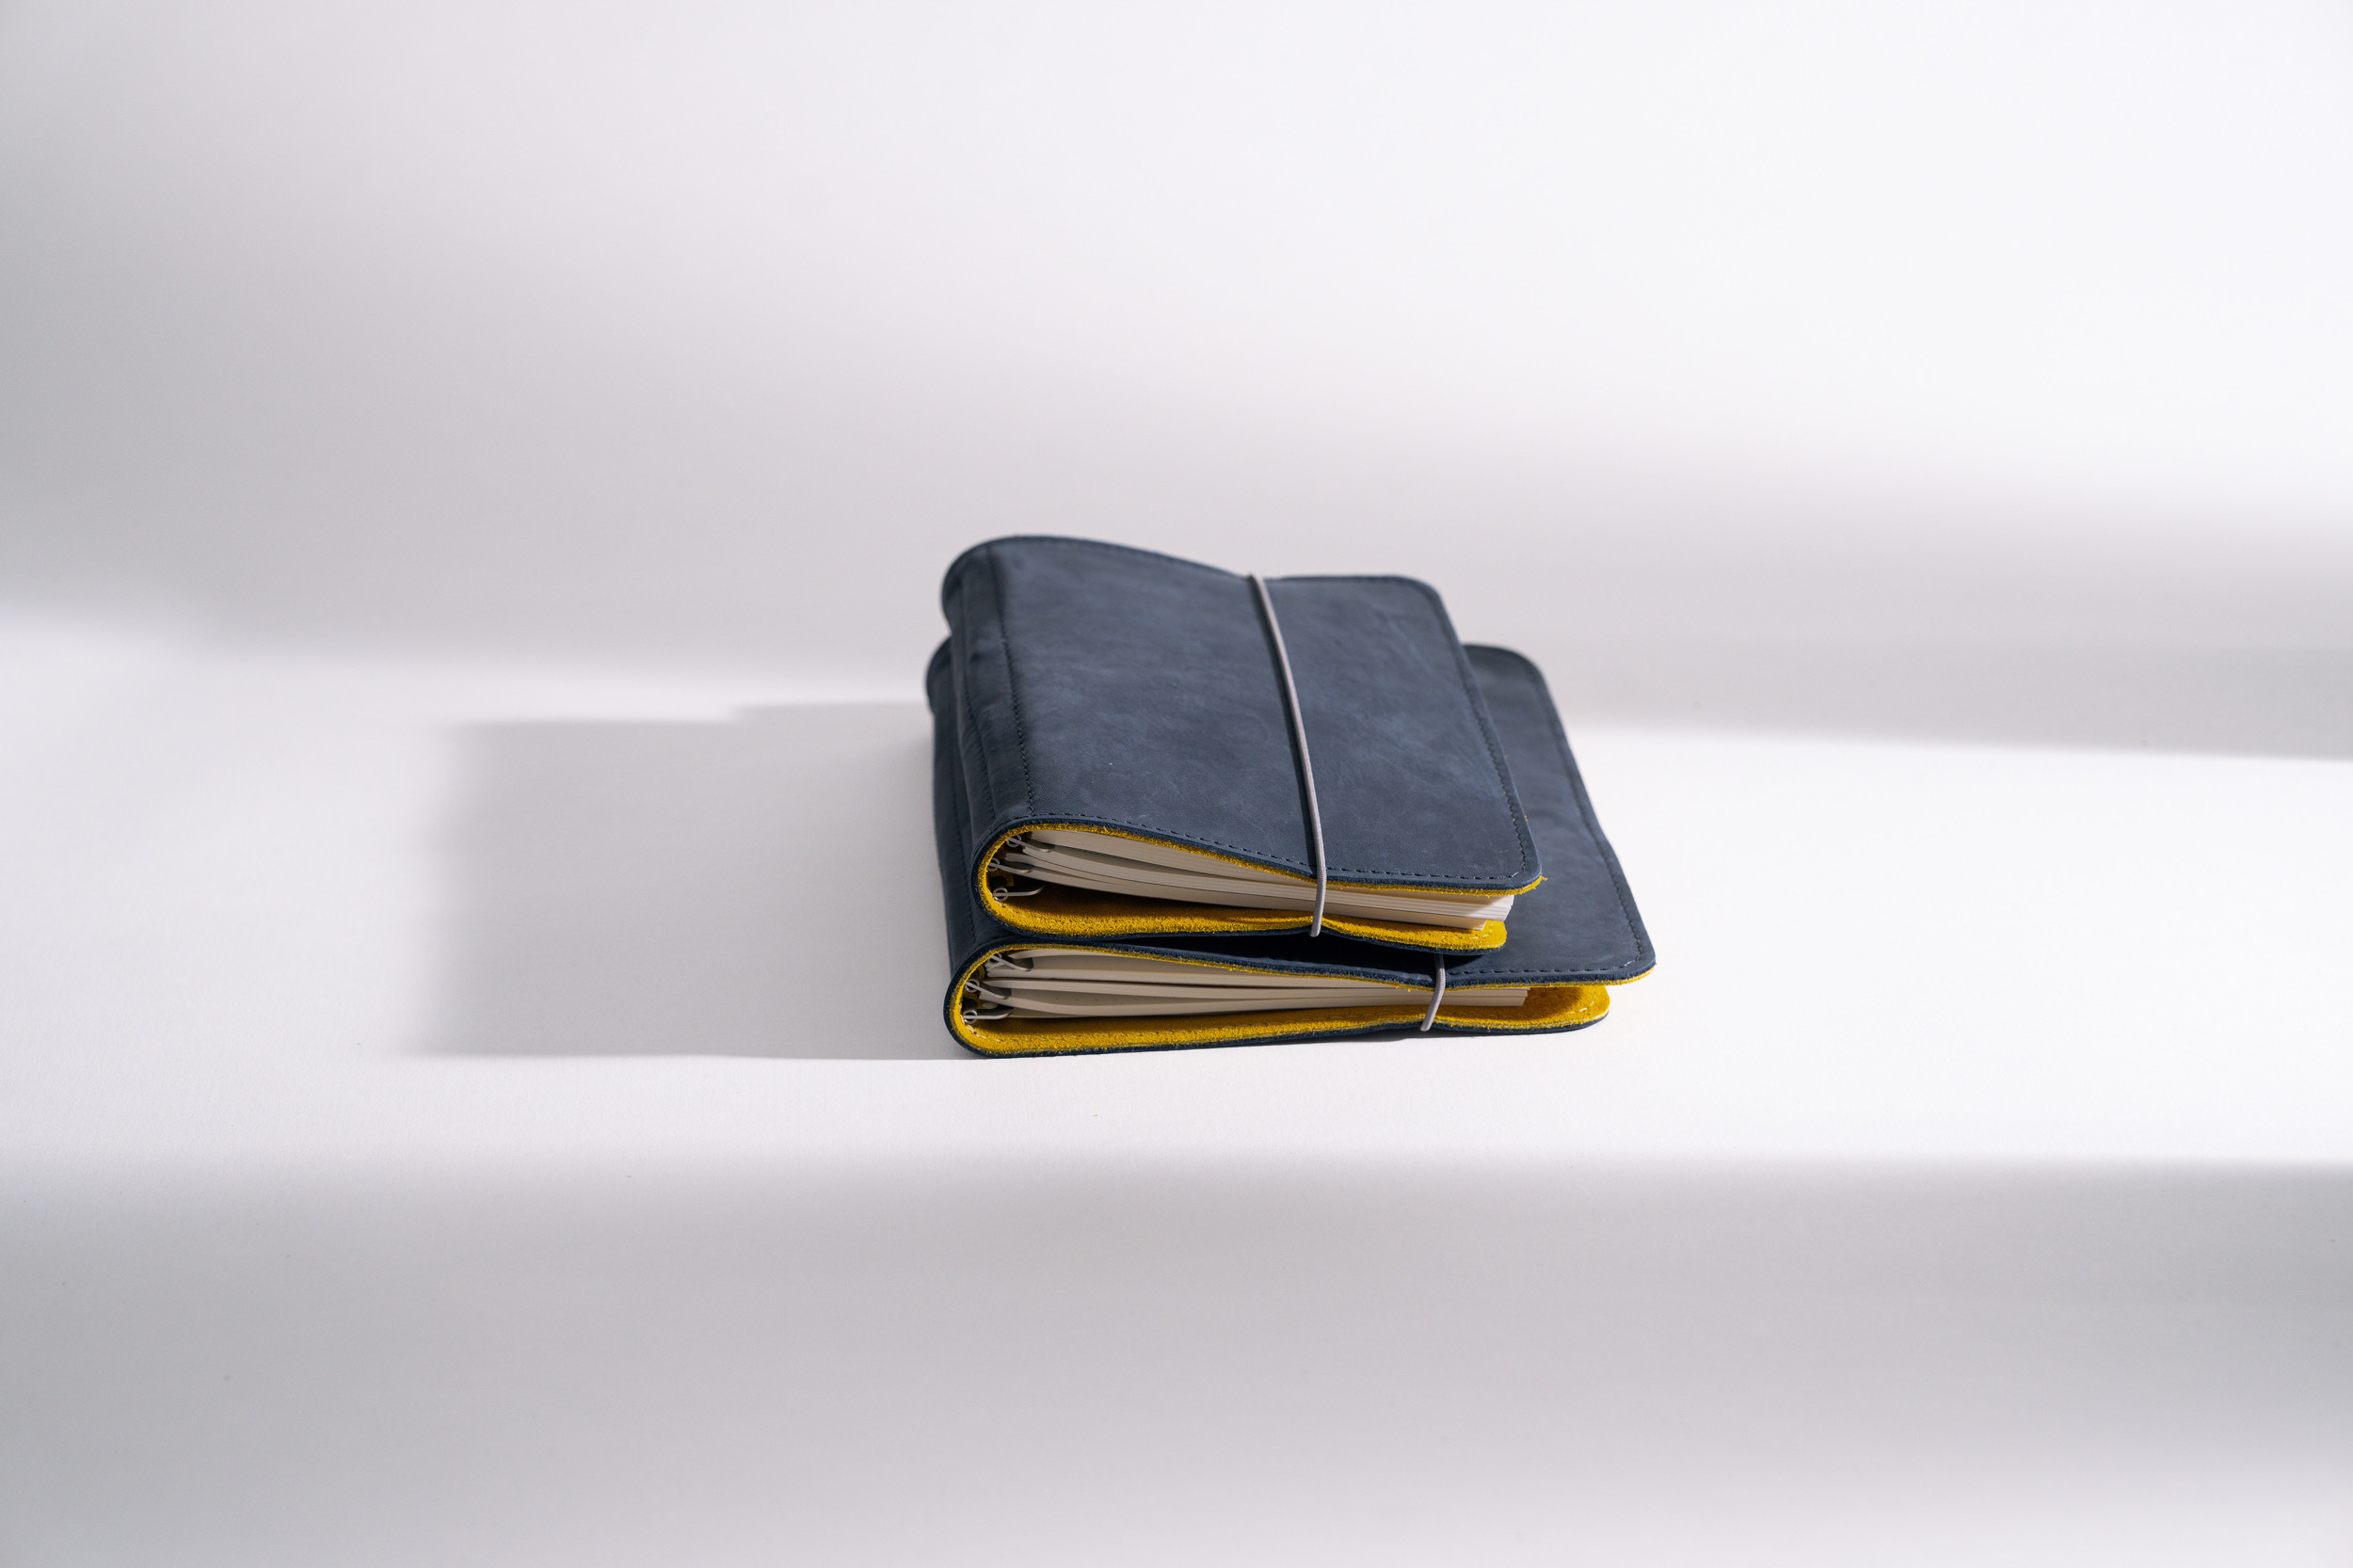 ROTERFADEN Taschenbegleiter SO_22 – Vielseitiges Design für B6 und M Formate mit »Blauer Engel« zertifiziertem Leder und Verschlussgummi.